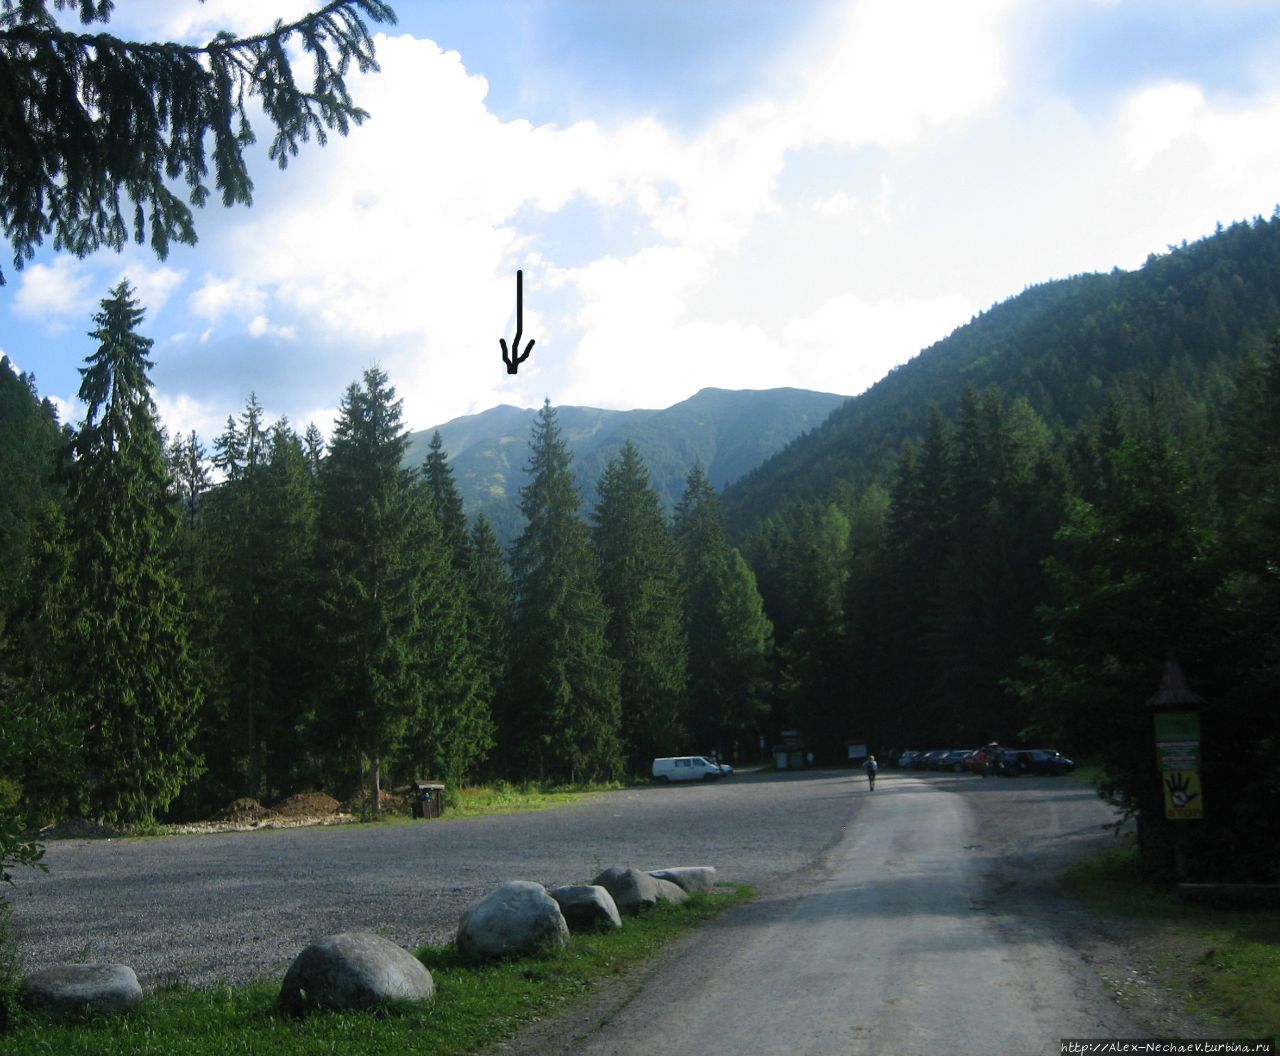 Фото с паркинга. Грубоватой нарисованной стрелочкой указана точка назначения. Липтовски-Микулаш, Словакия